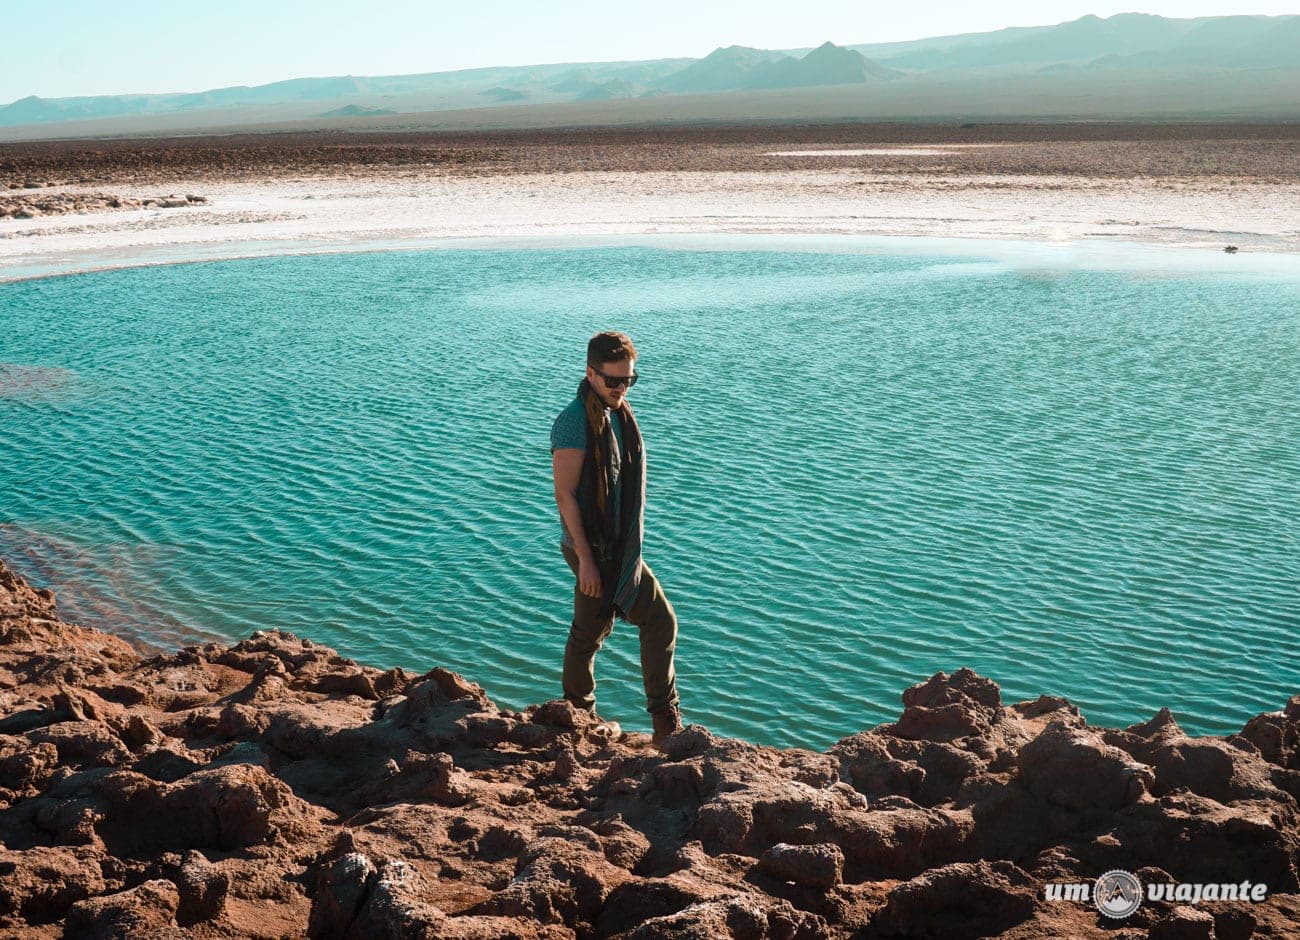 Lagunas Escondidas de Baltinache - Deserto do Atacama, Chile